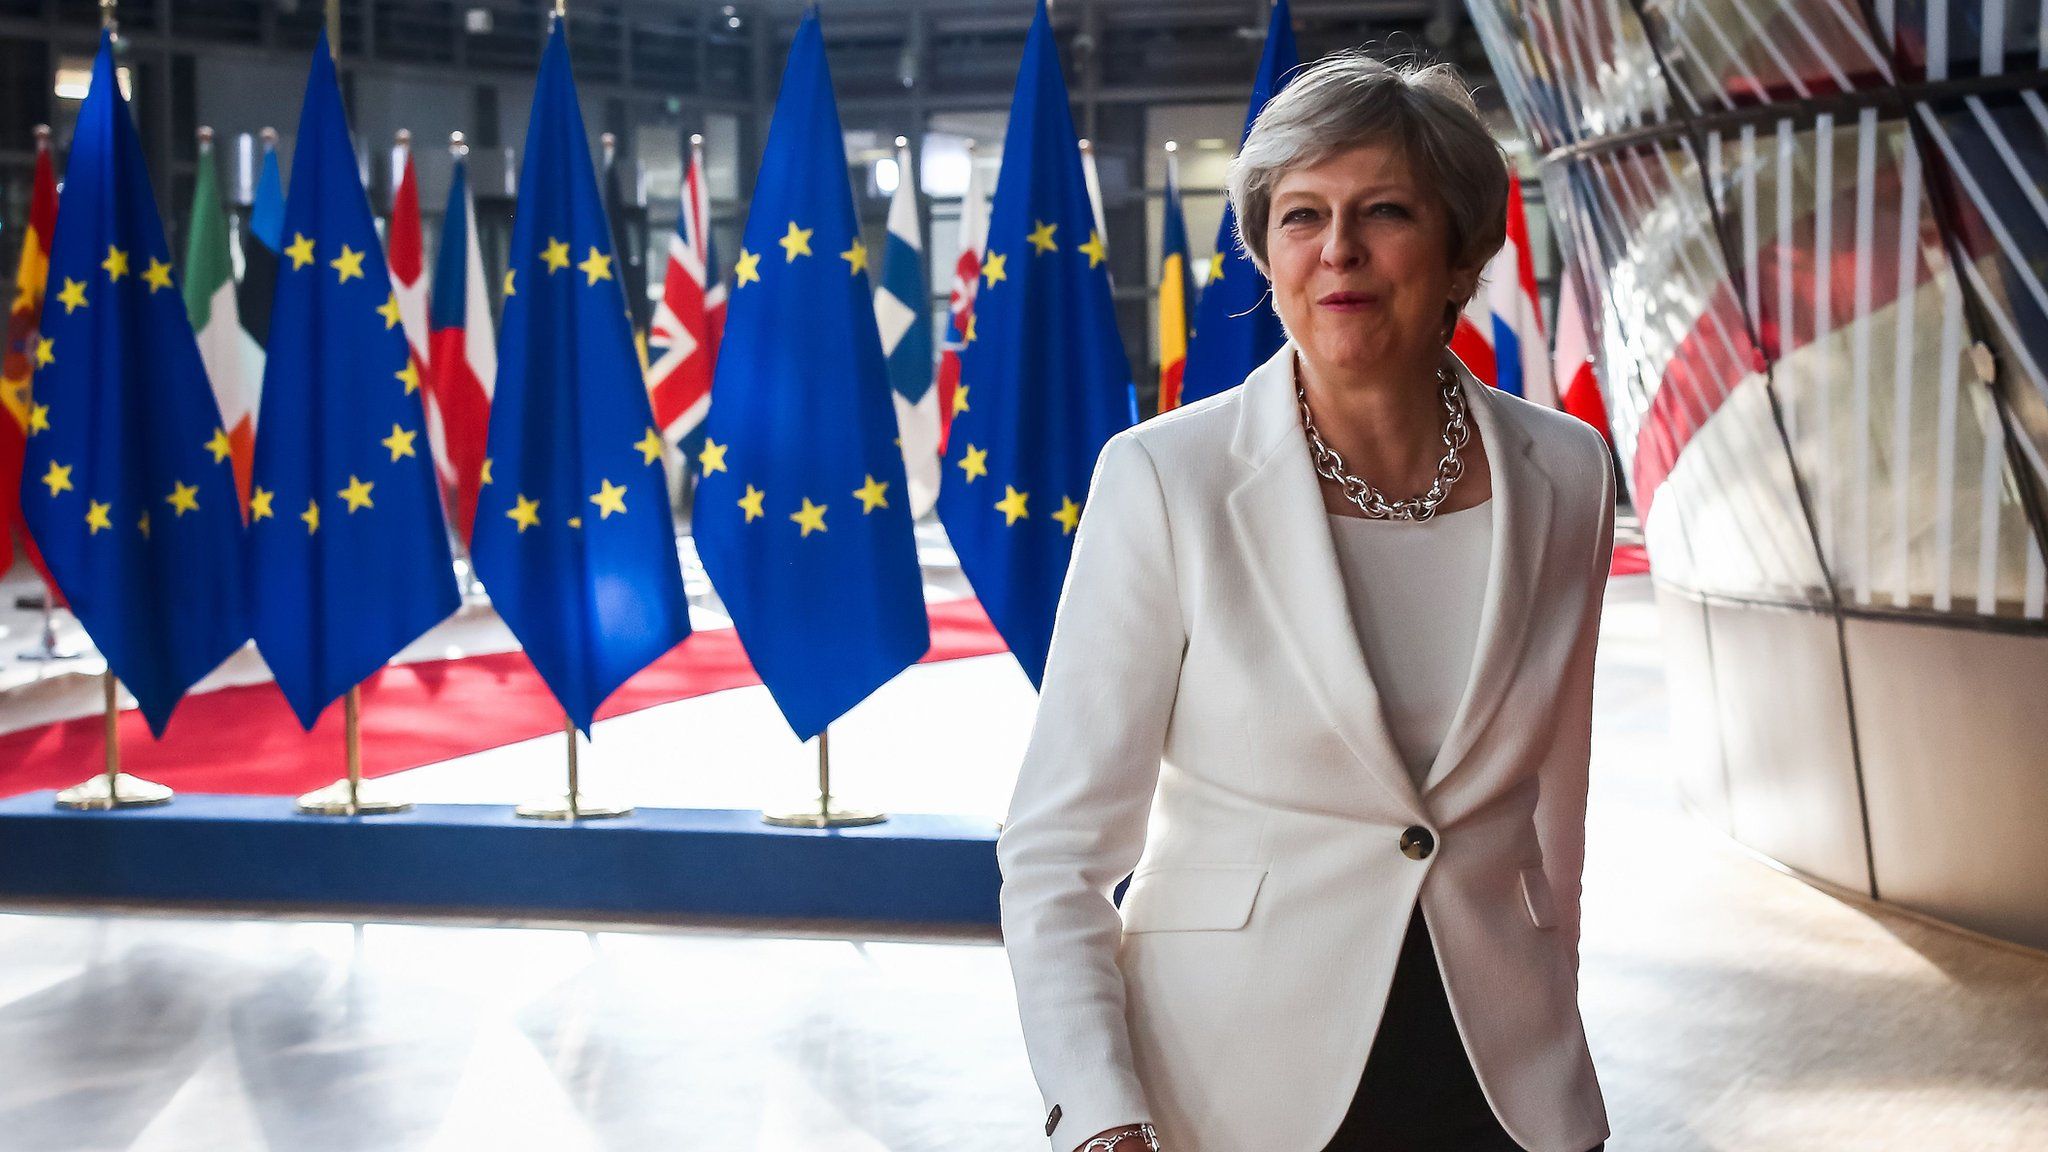 Theresa May arriving at EU Summit